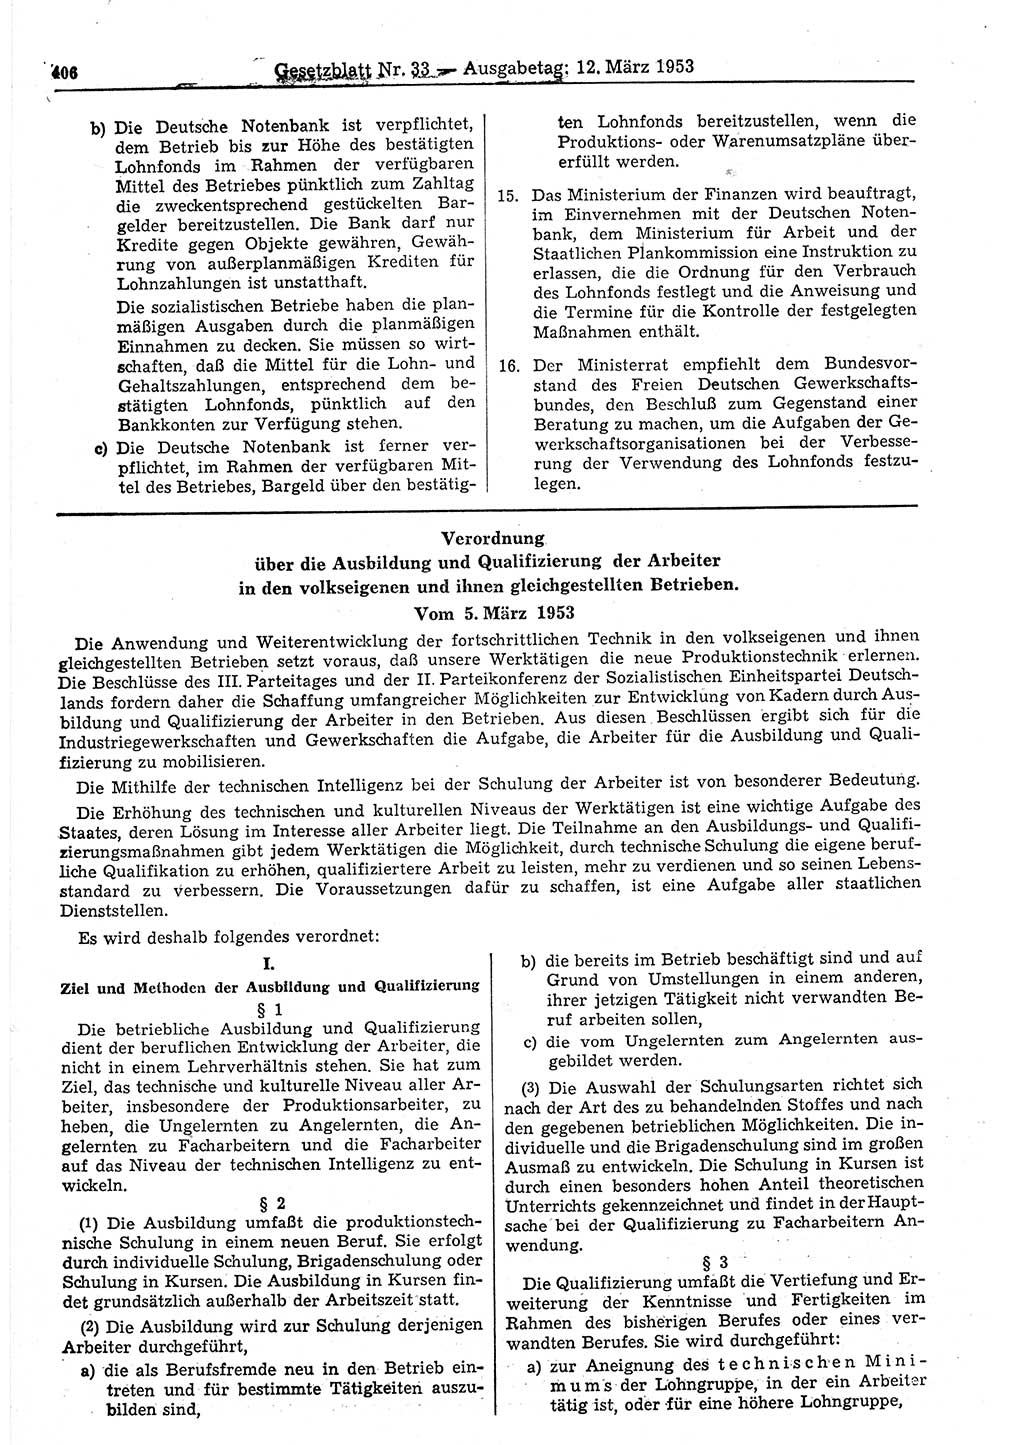 Gesetzblatt (GBl.) der Deutschen Demokratischen Republik (DDR) 1953, Seite 406 (GBl. DDR 1953, S. 406)